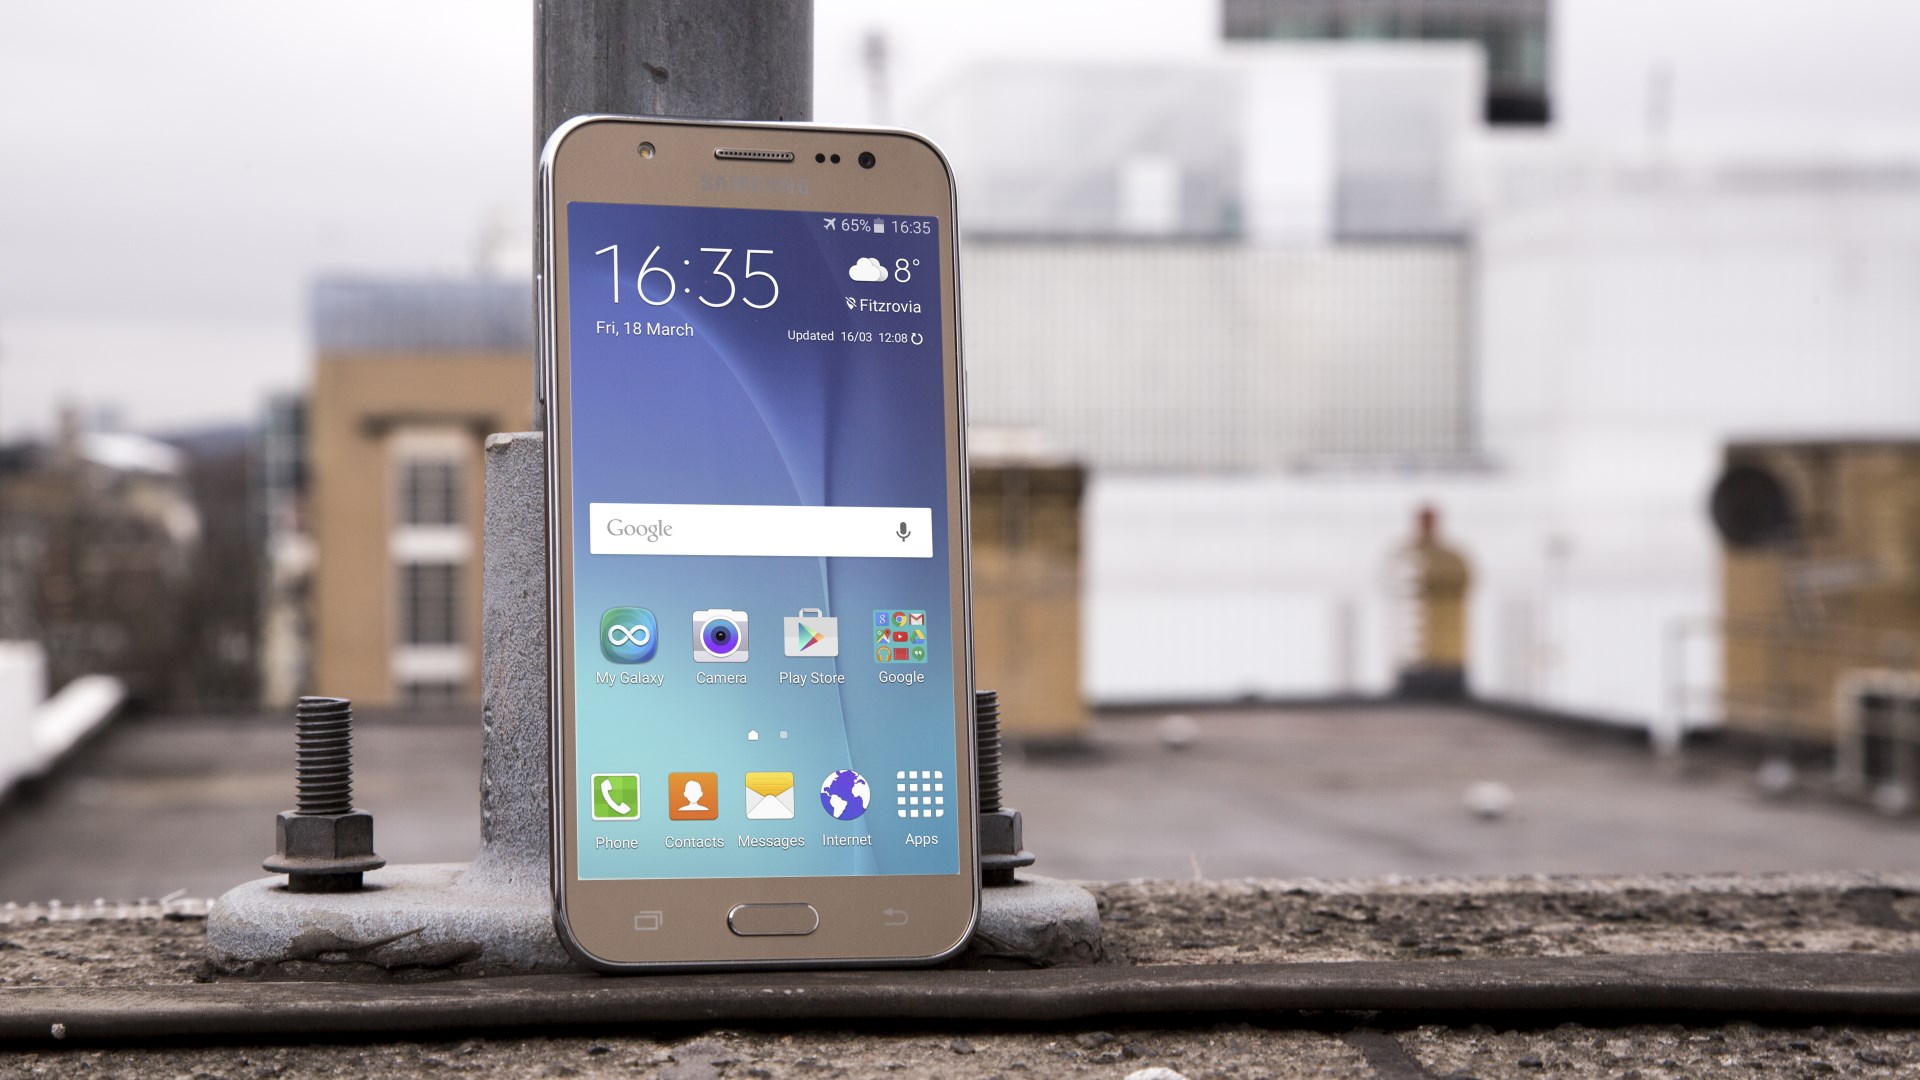 European Samsung Galaxy J5 receives an update